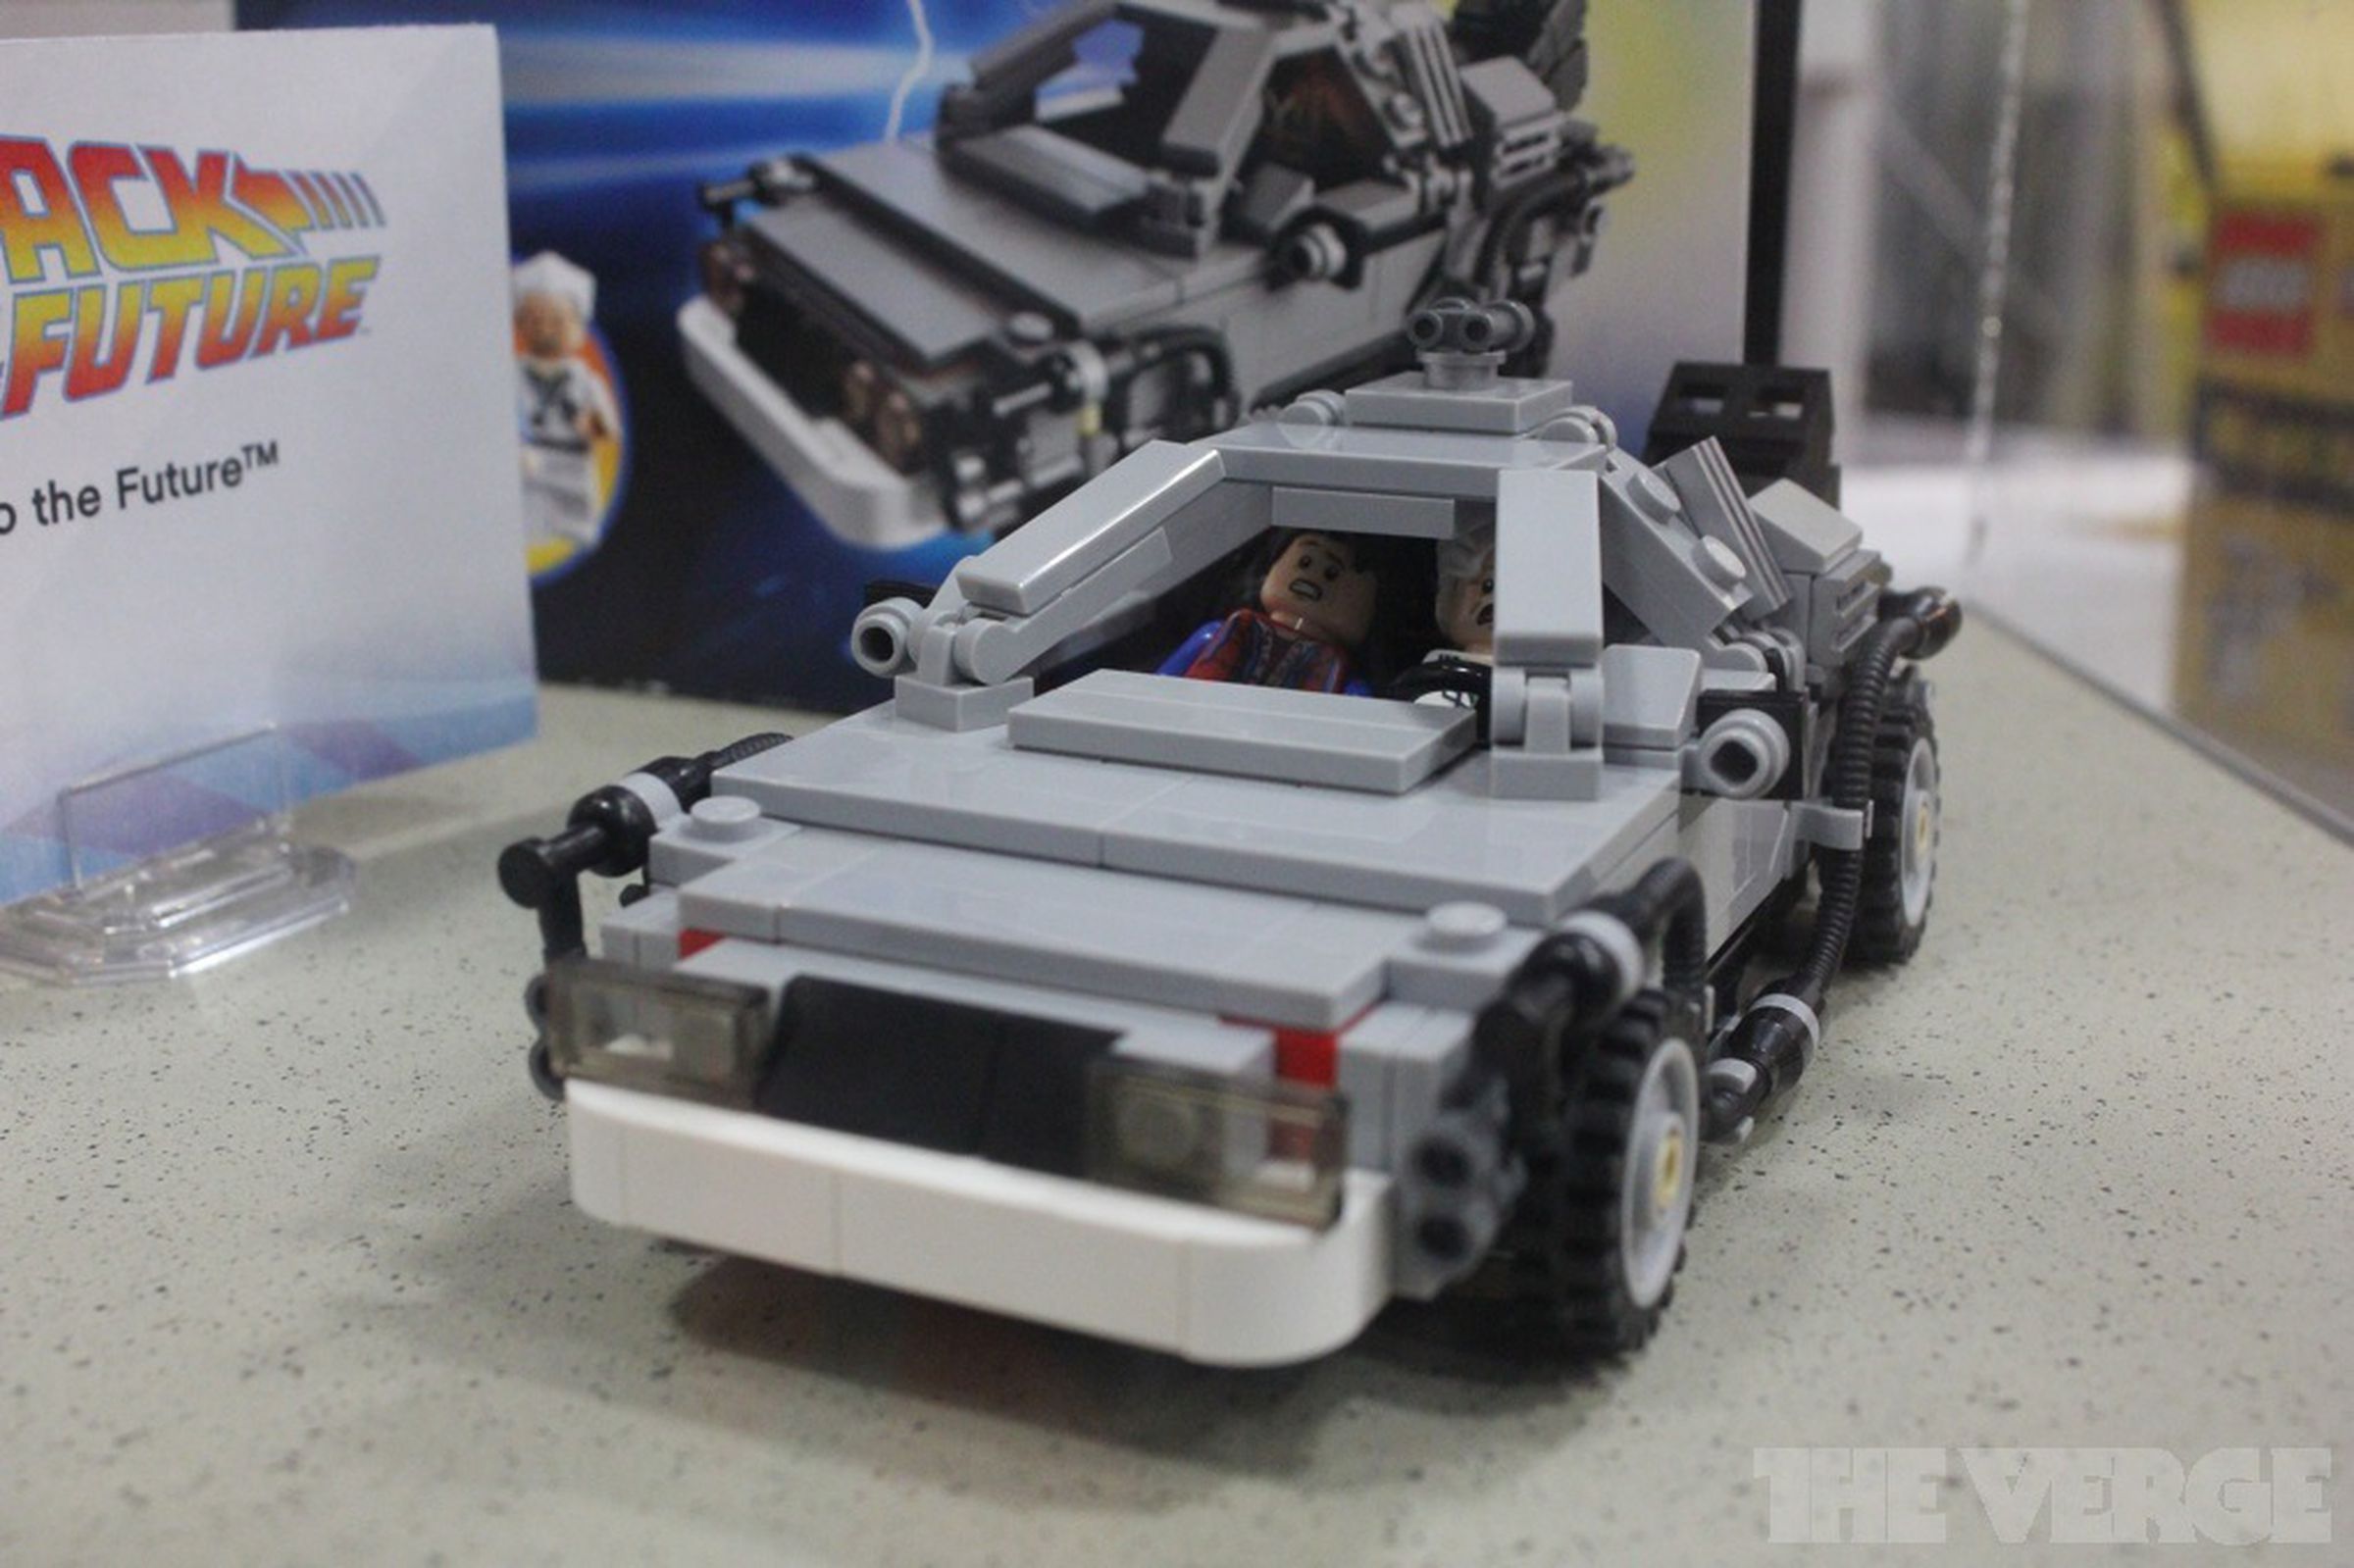 'Back to the Future' Lego DeLorean